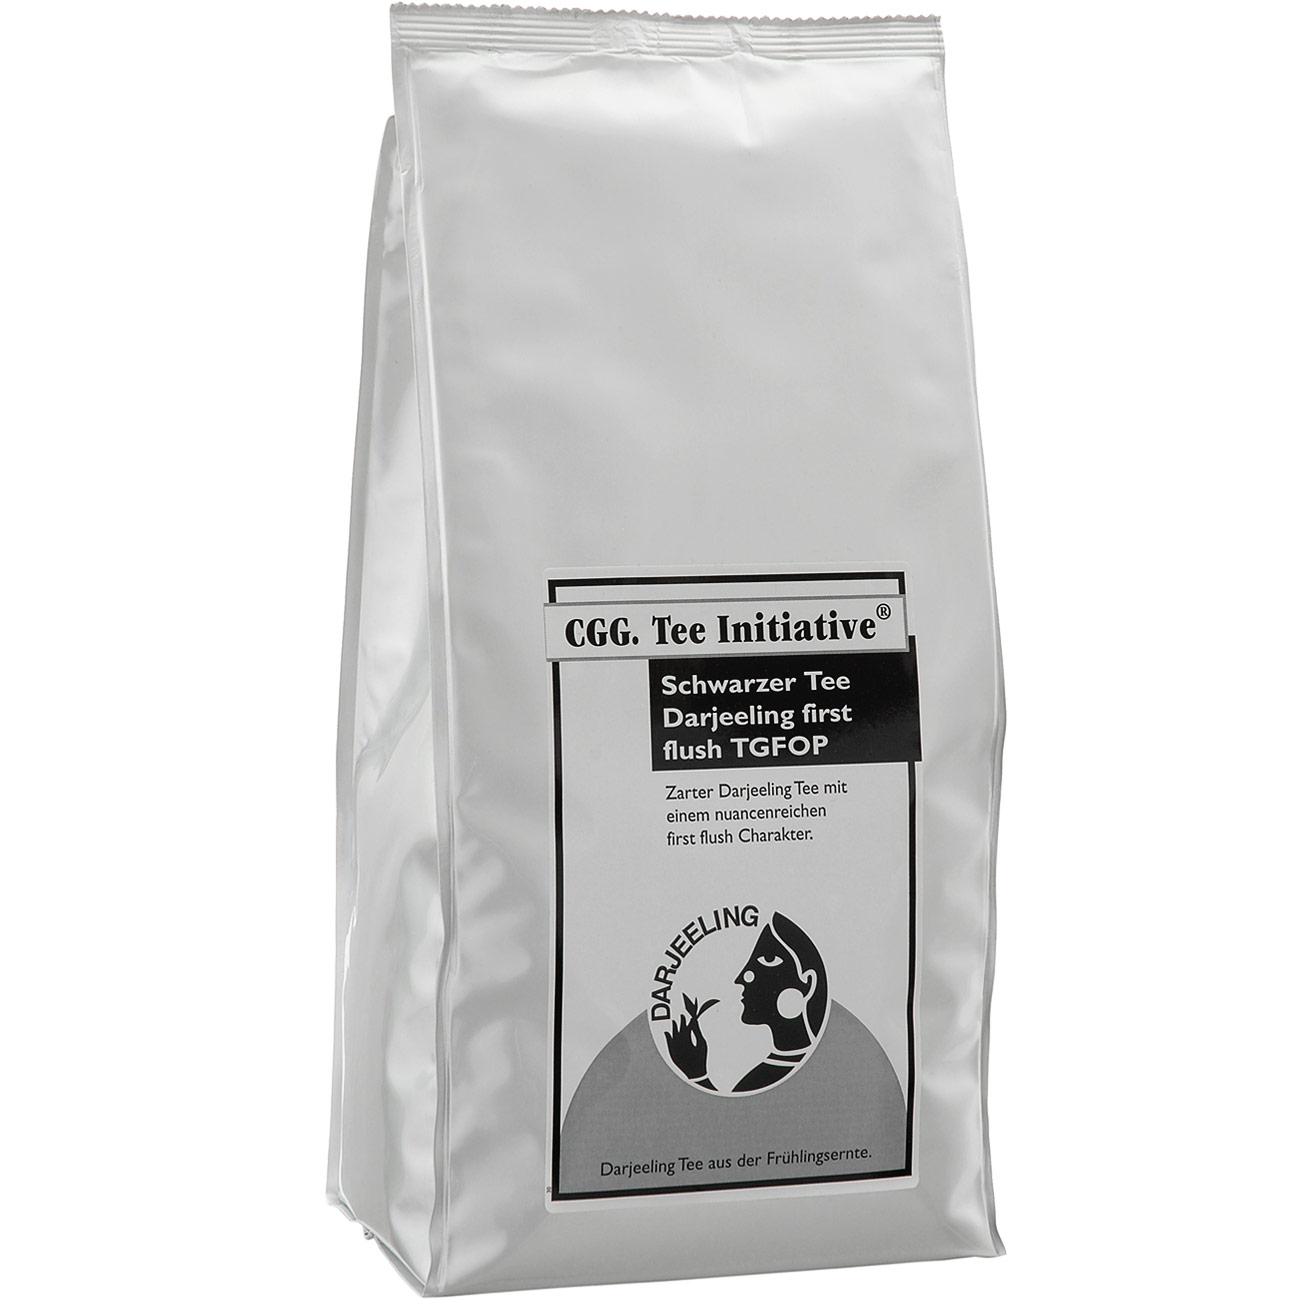 1 kg Darjeeling FTGFOP Tee Initiative first flush loser schwarzer Tee